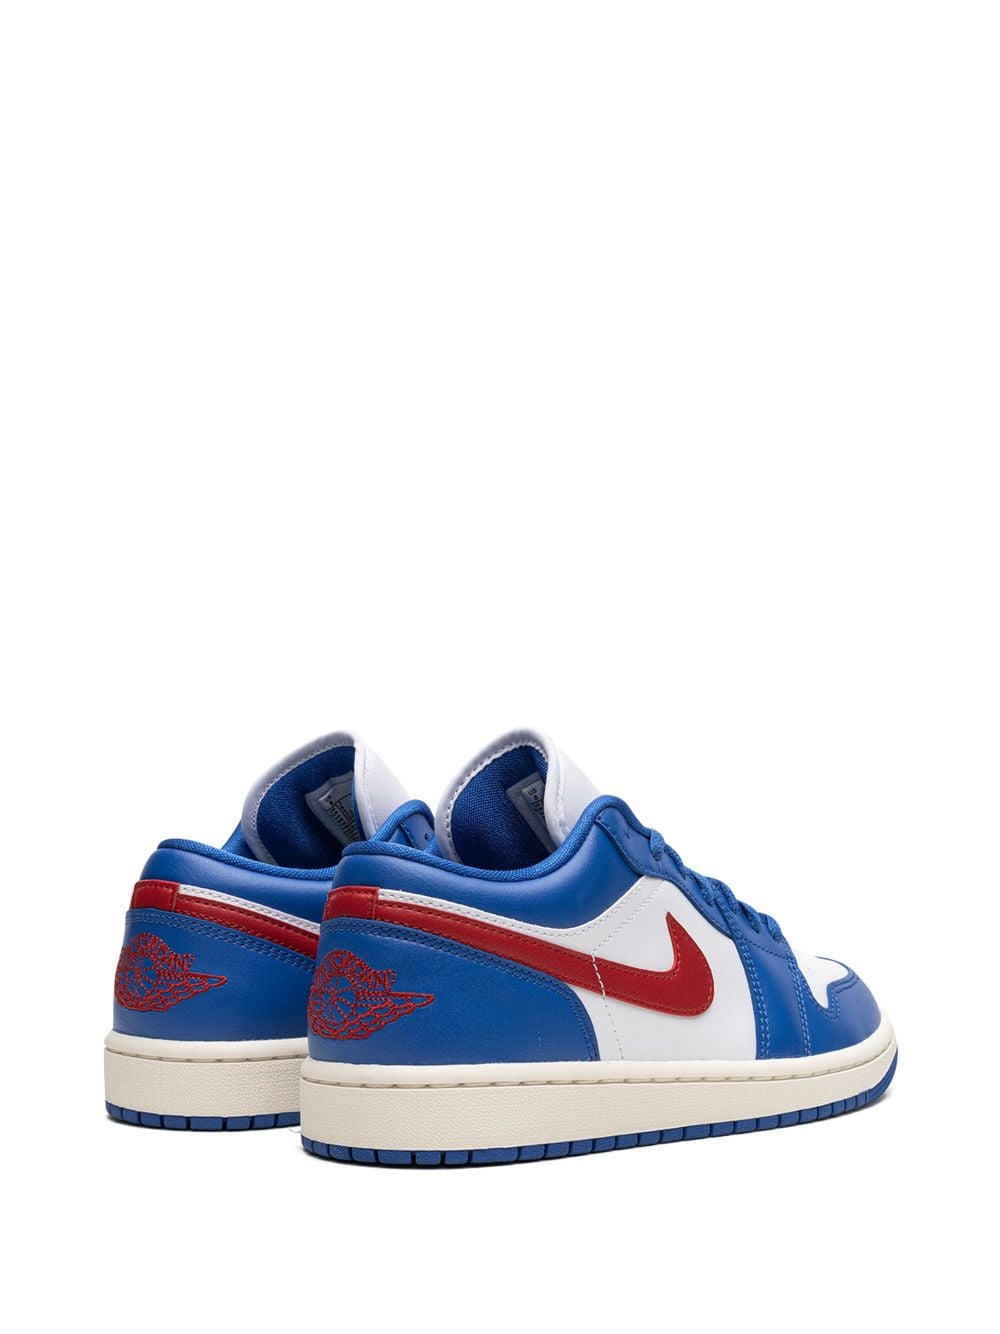 Jordan Air 1 Low "Sport Blue" sneakers